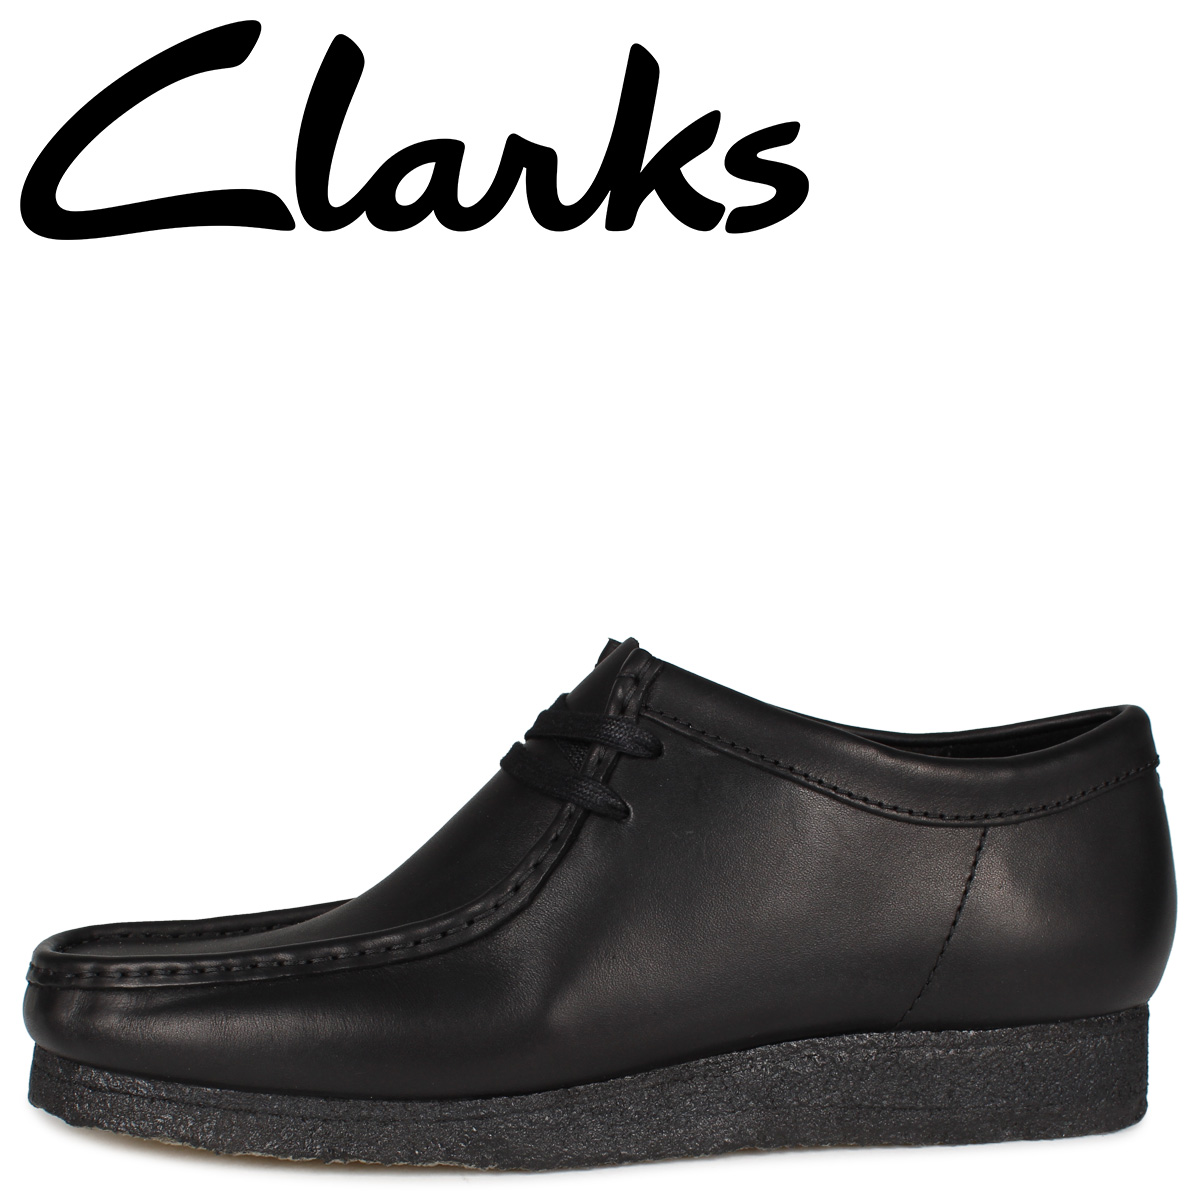 Clarks クラークス ワラビー ブーツ メンズ WALLABEE BOOT ブラック 黒 26155514